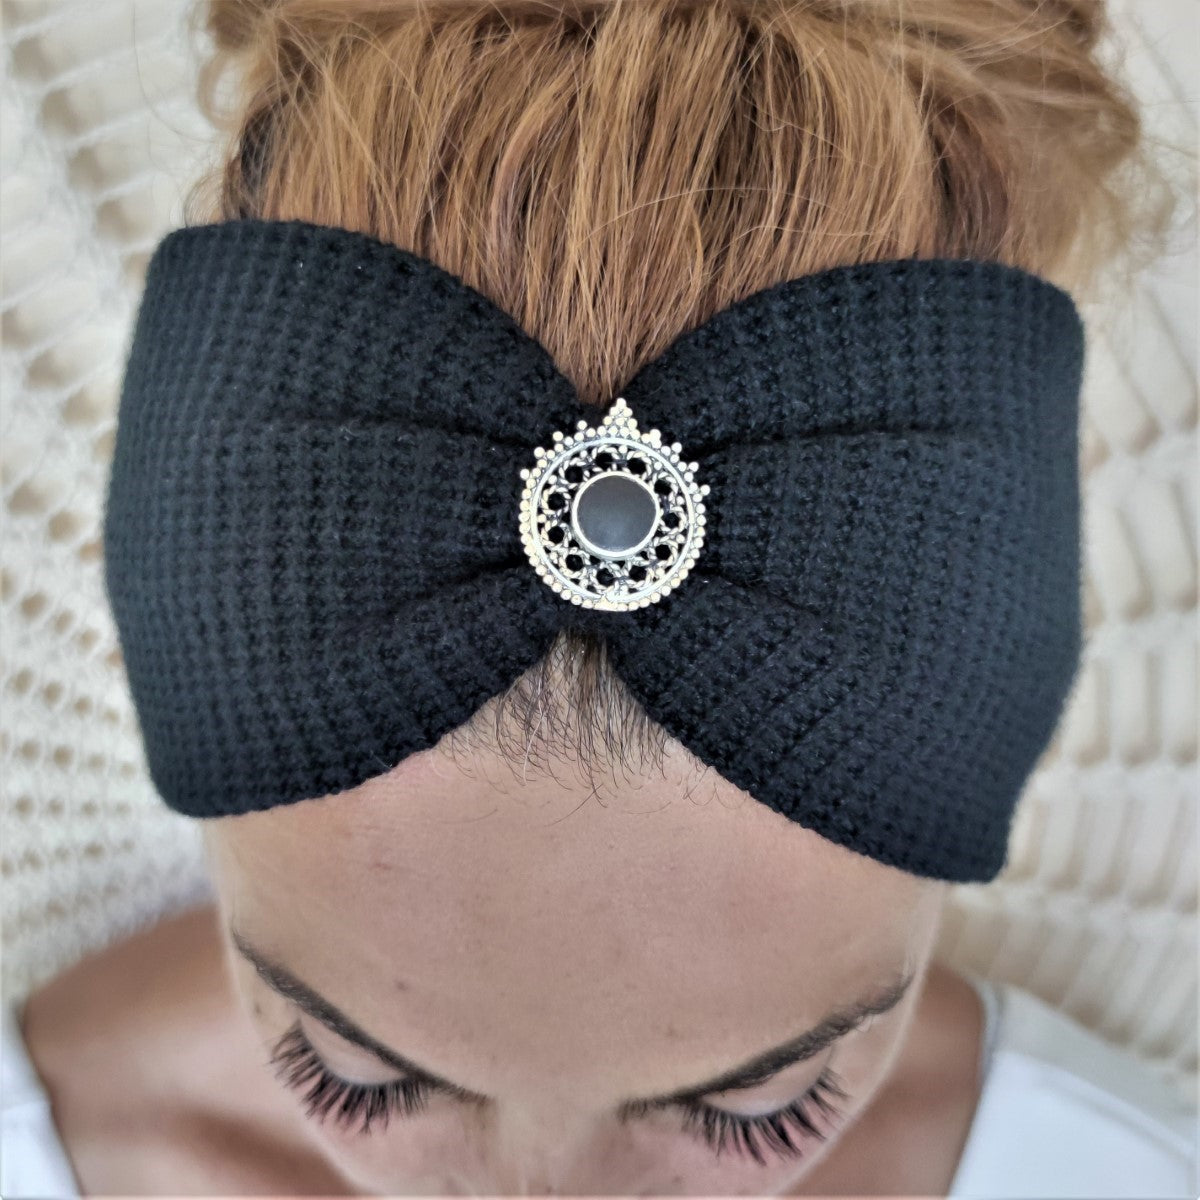 Harmonie Haarband in schwarz - mit Edelsteinen verziert